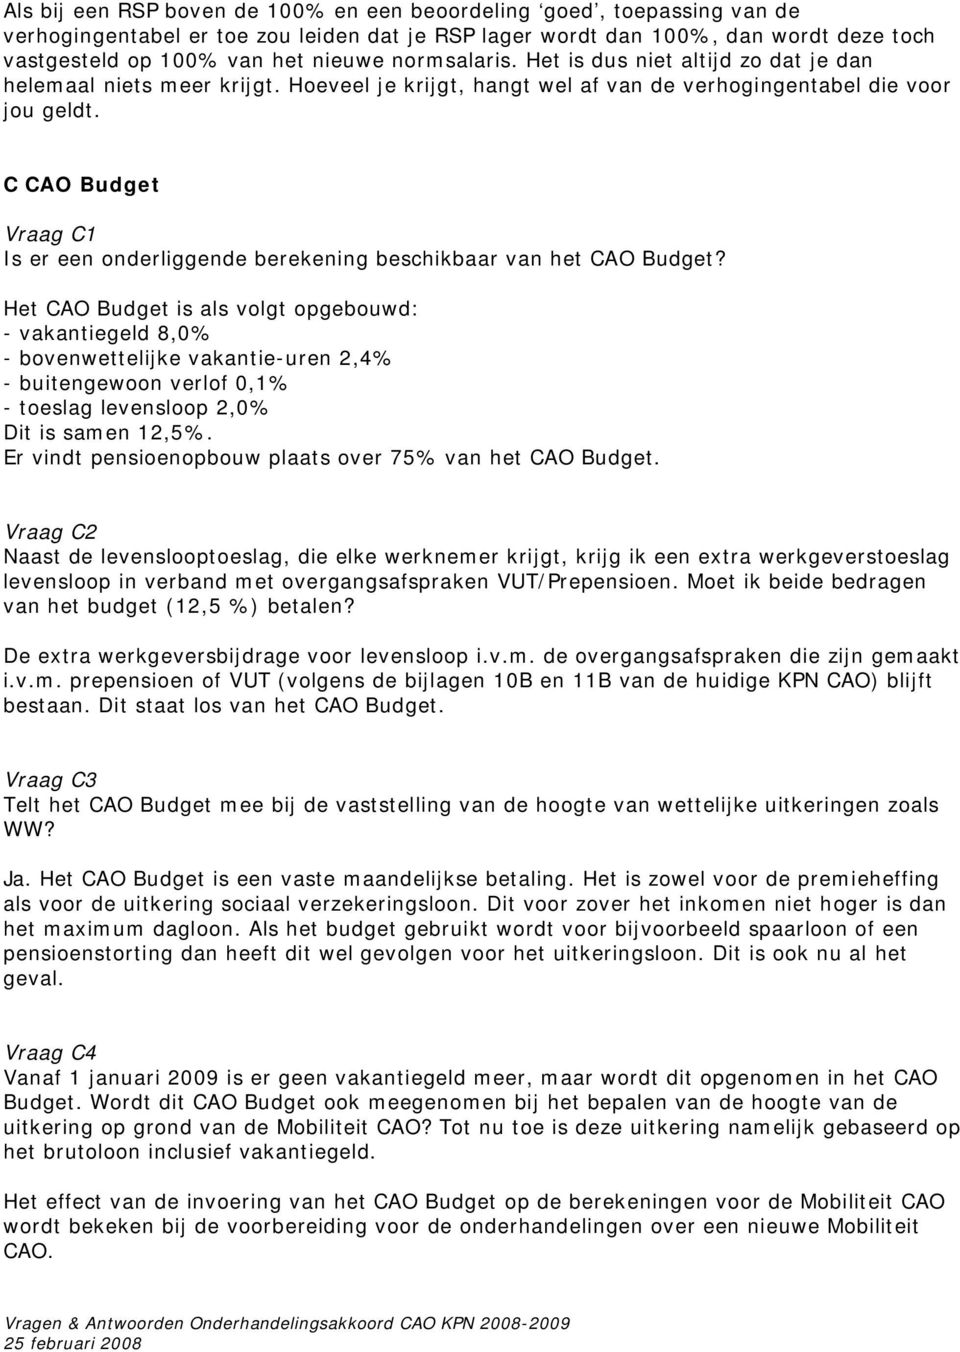 C CAO Budget Vraag C1 Is er een onderliggende berekening beschikbaar van het CAO Budget?